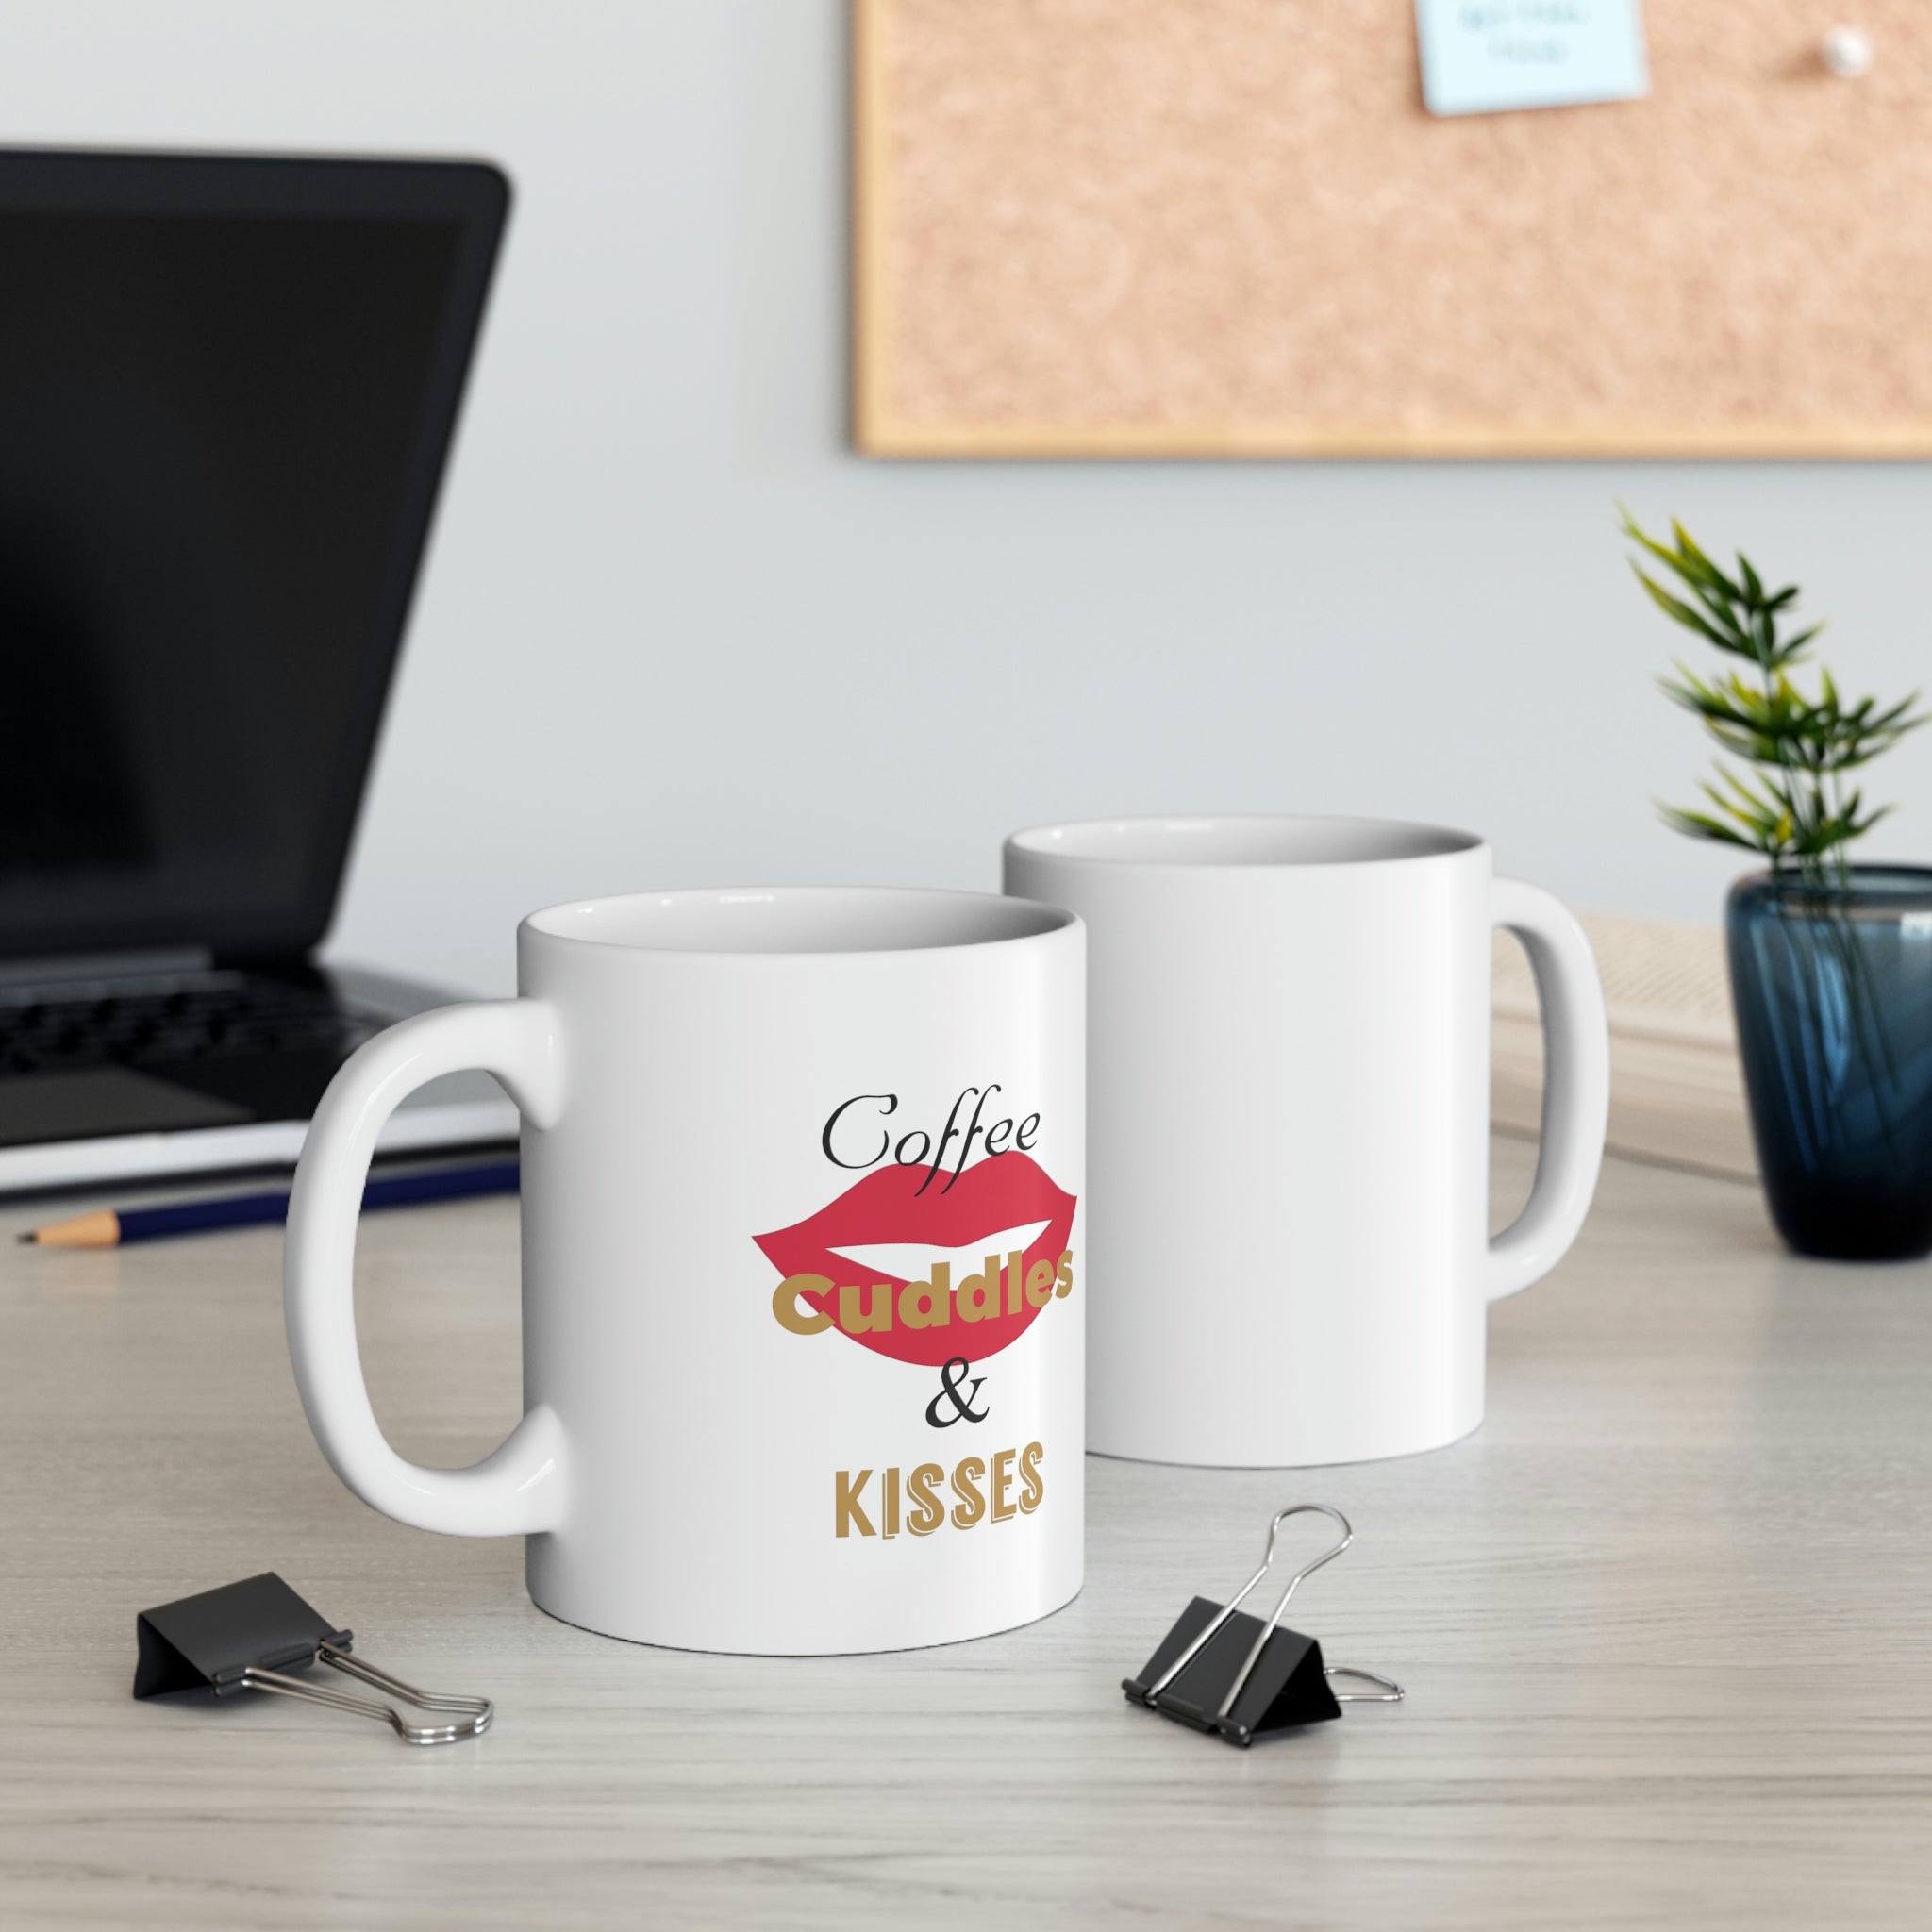 Coffee Cuddles & Kisses Ceramic Mug 11oz